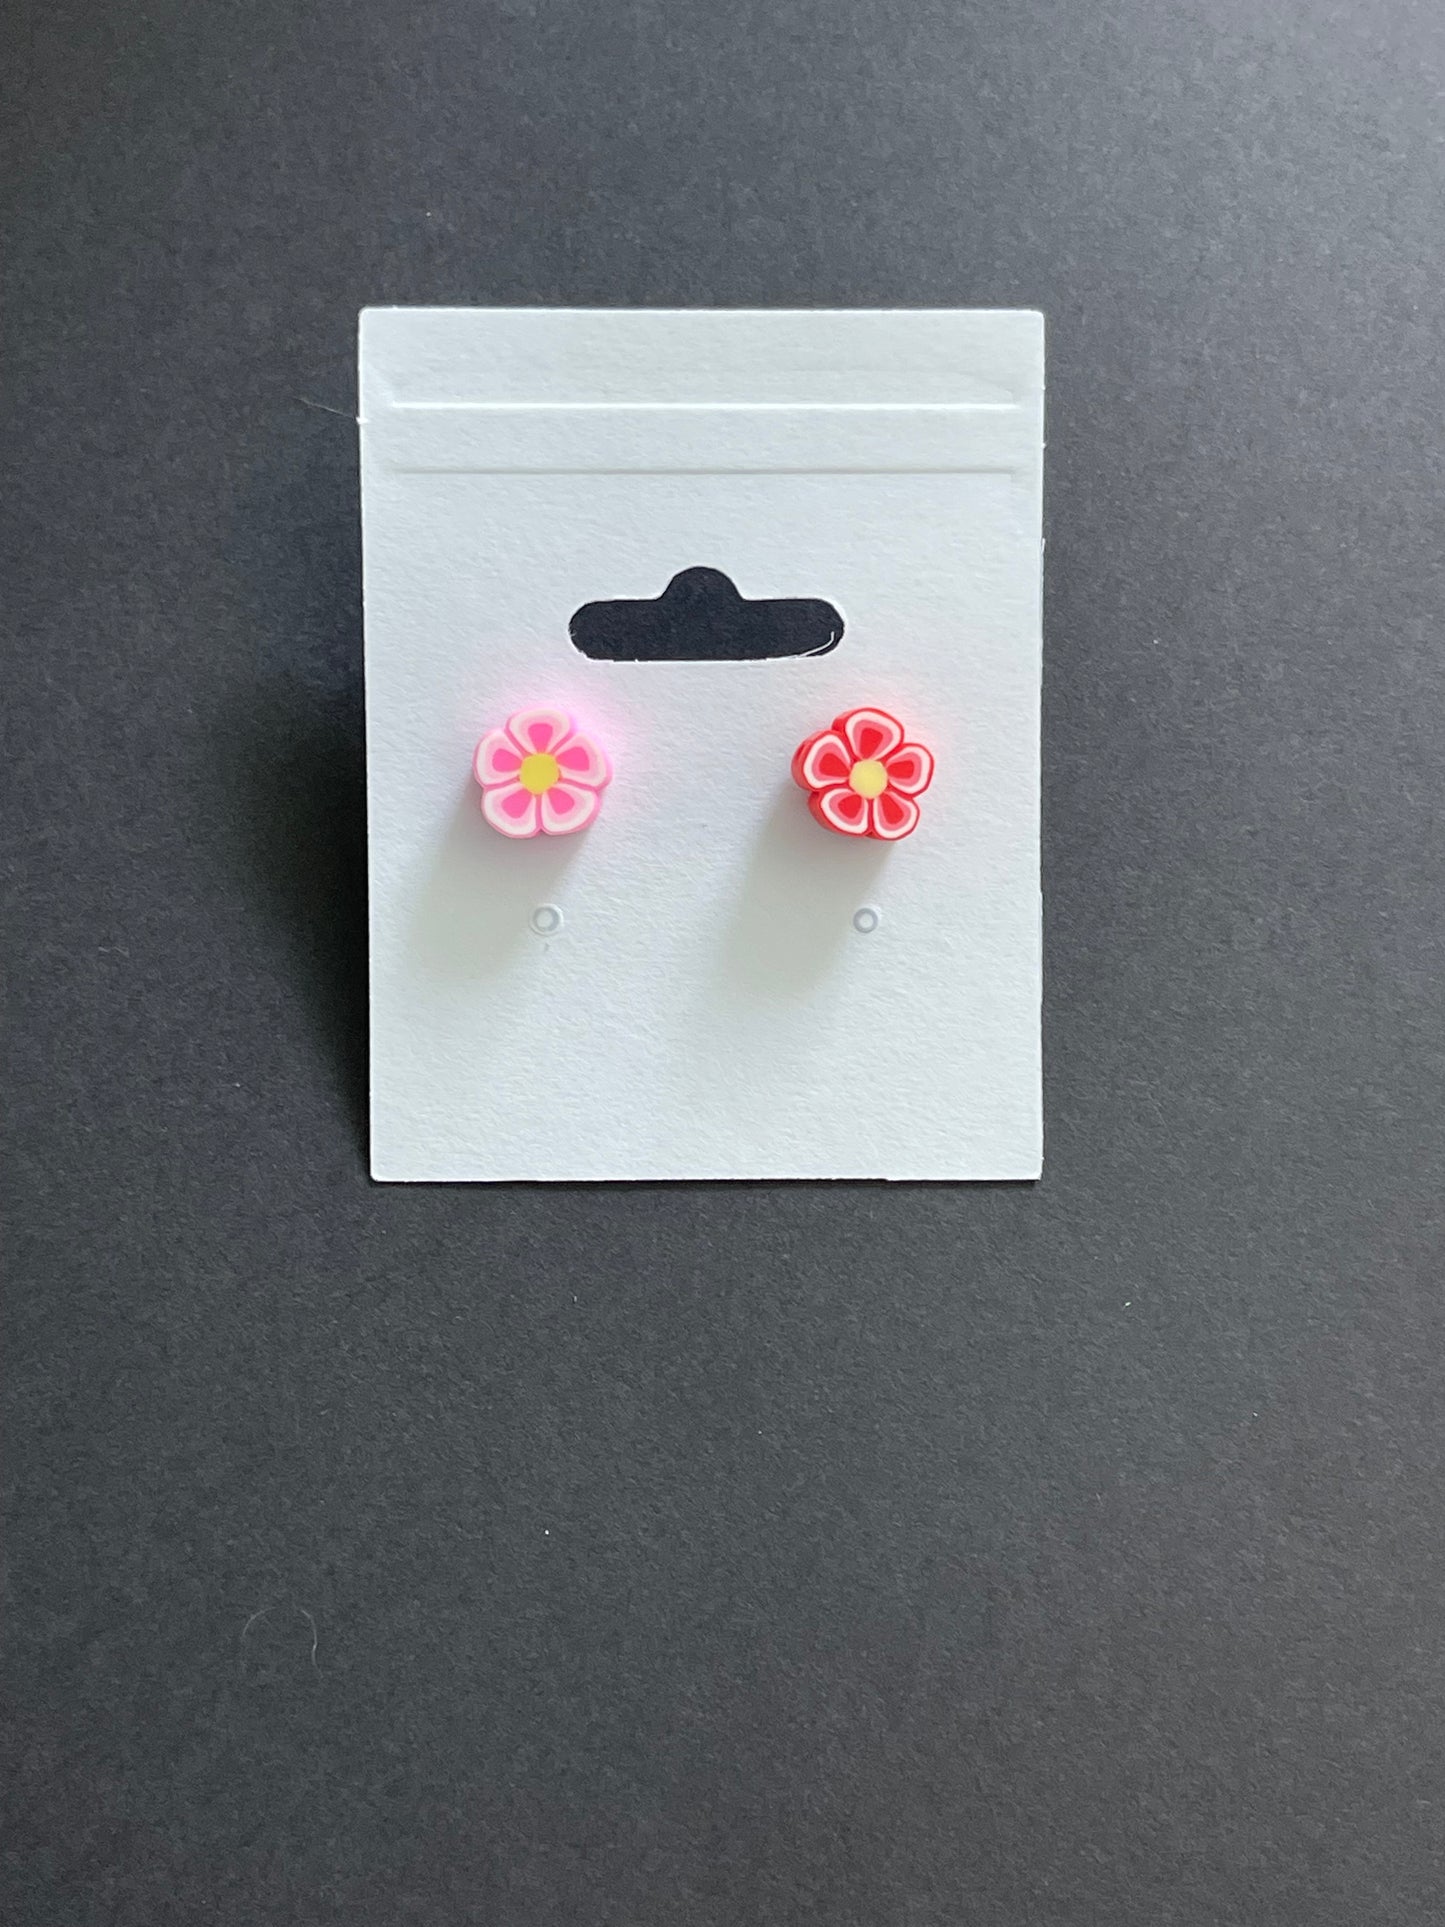 The Hawaiian Flower Stud Earrings